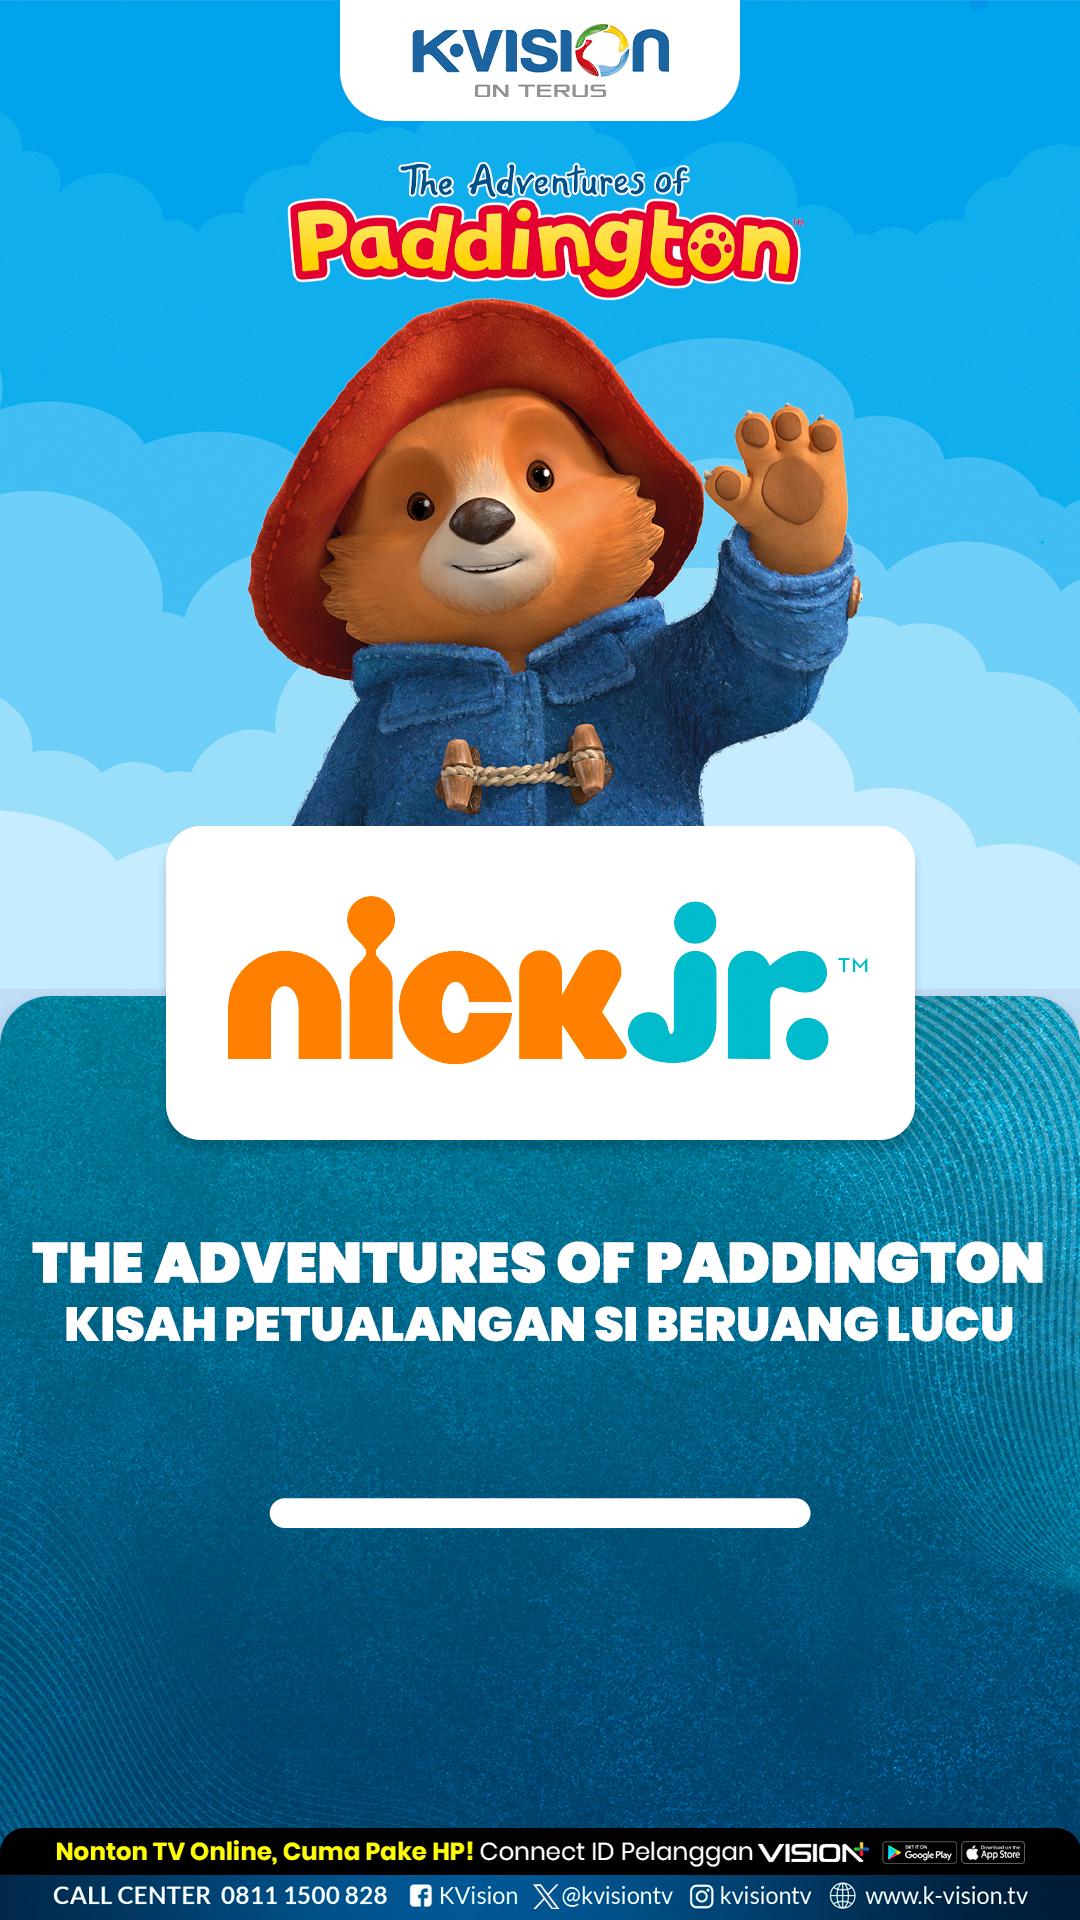 The Adventures of Paddington, Kisah Petualangan Si Beruang Lucu